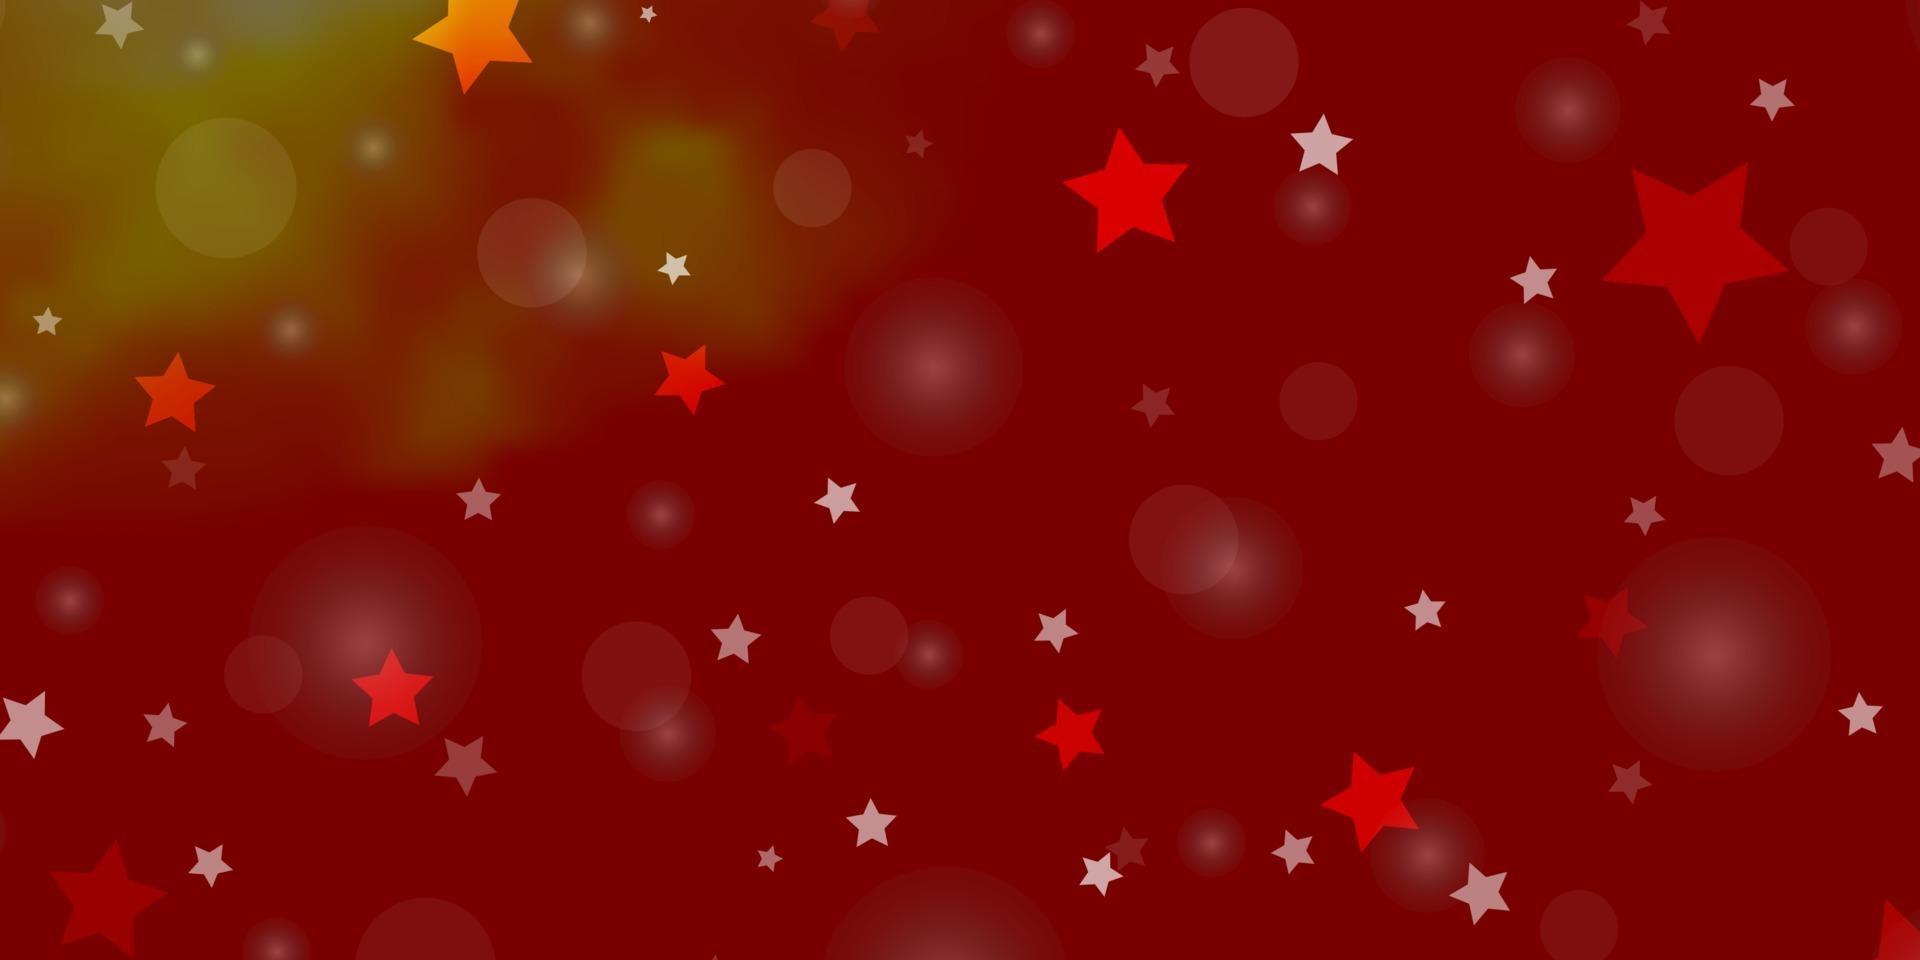 sfondo vettoriale rosso chiaro, giallo con cerchi, stelle.